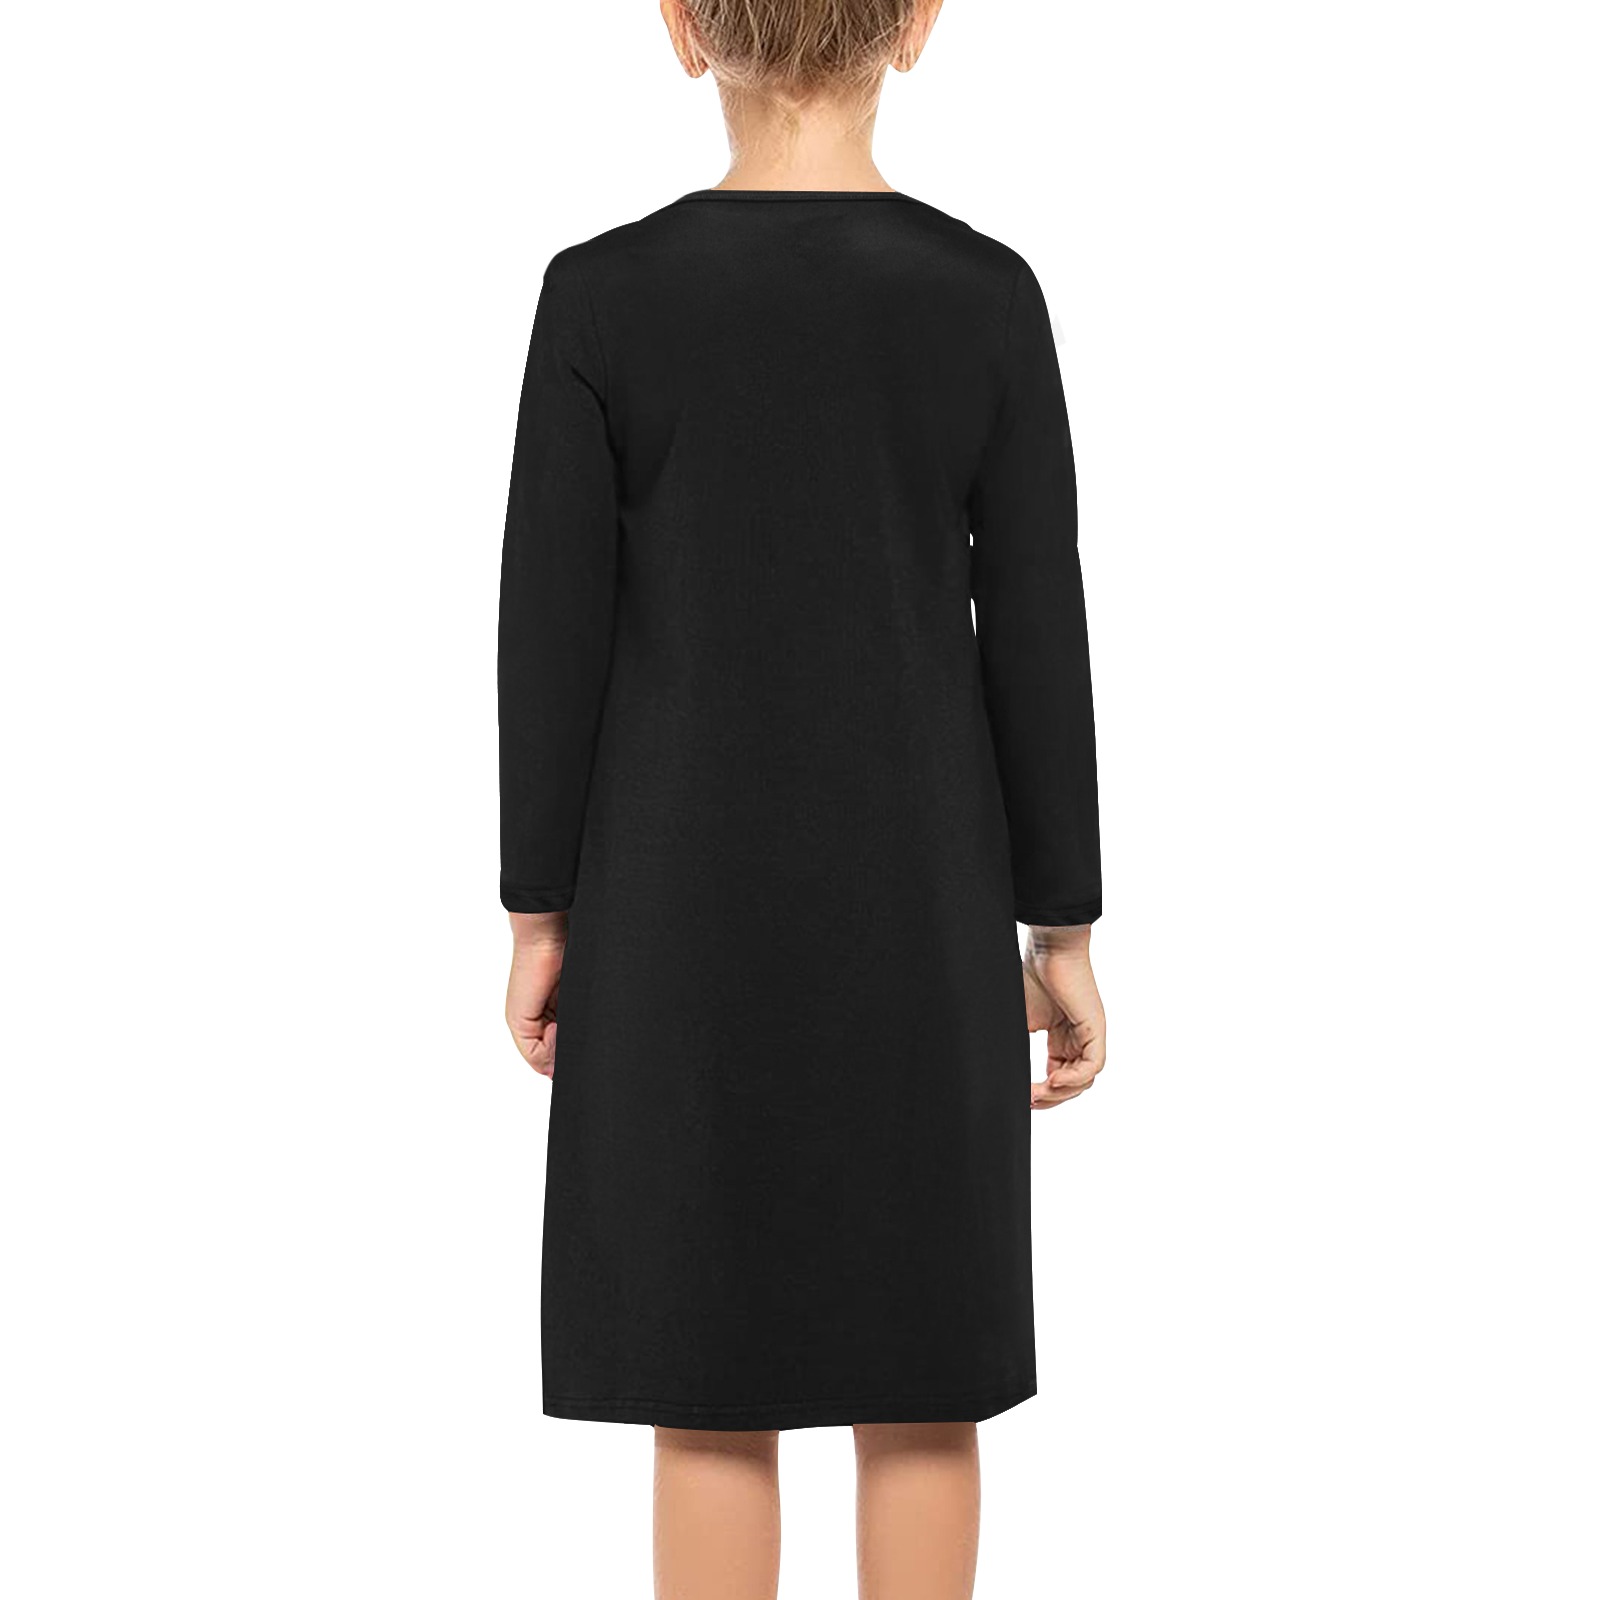 Foxy Roxy Black Girls' Long Sleeve Dress (Model D59)